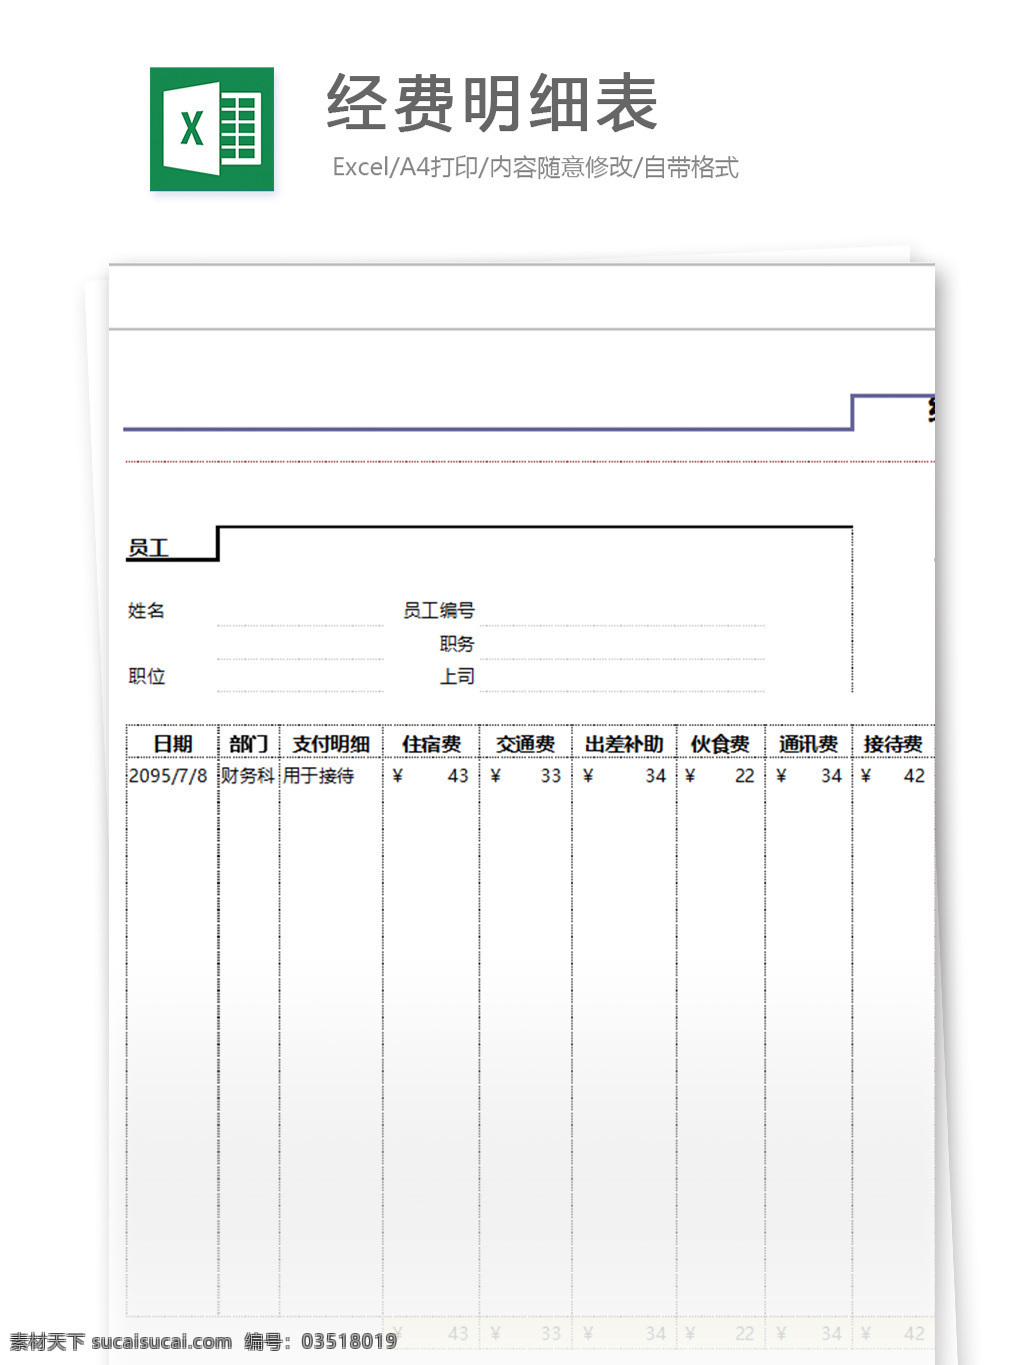 部门 经费 明细表 表格模板 图表 表格设计 表格 统计 报表 年终总结 出差 数据 管理 工具 自动 excel 汇总 接待 分析